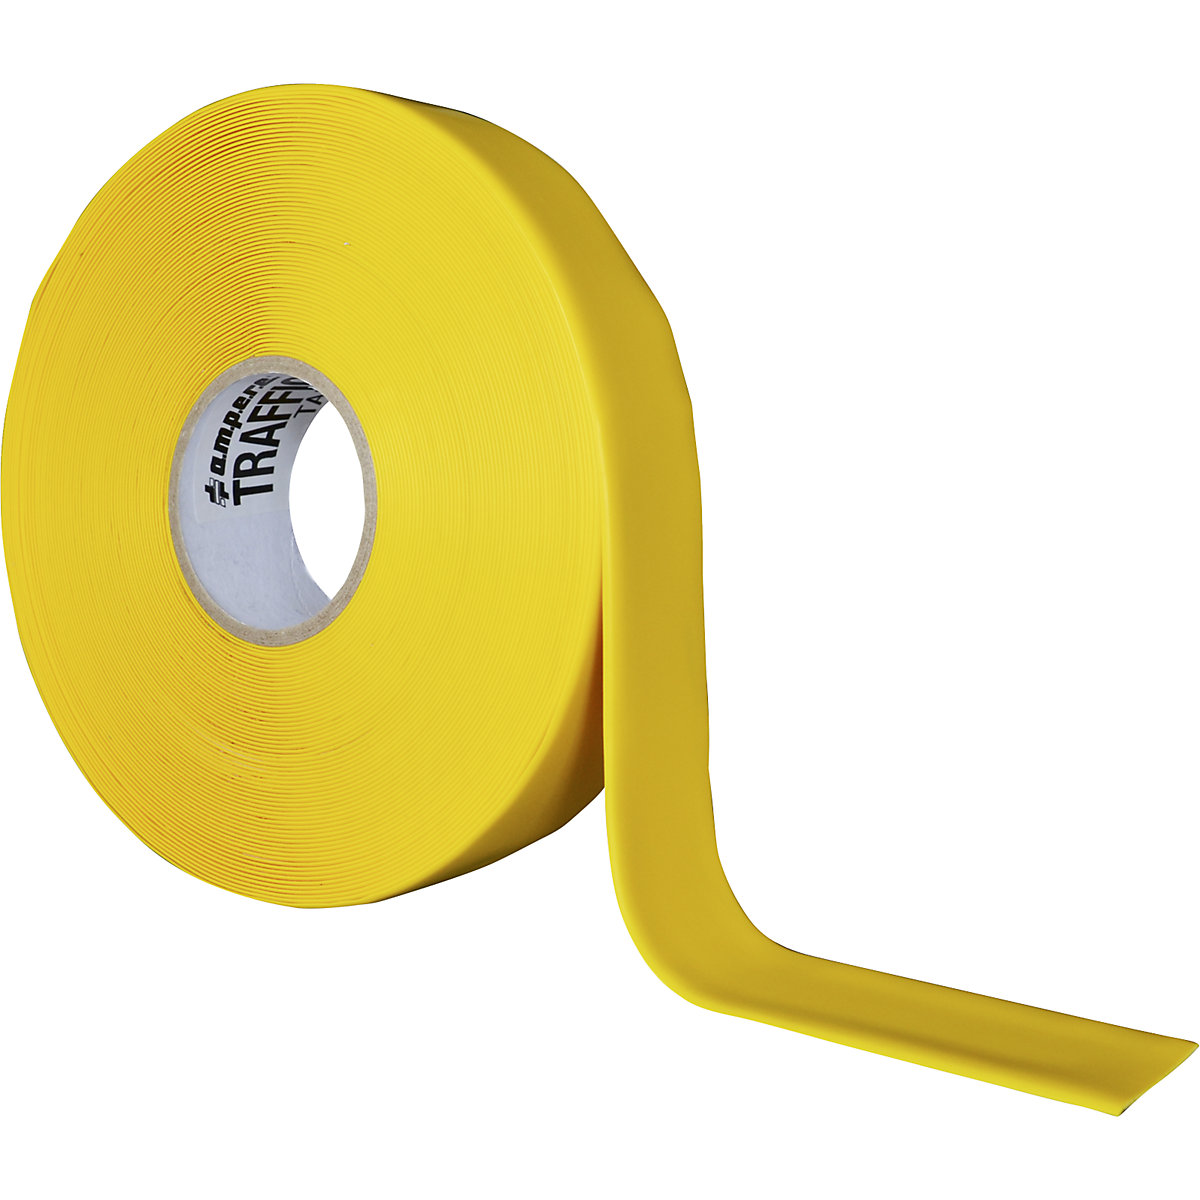 Vloermarkeringstape, extra sterk – Ampere, breedte 50 mm, geel-7